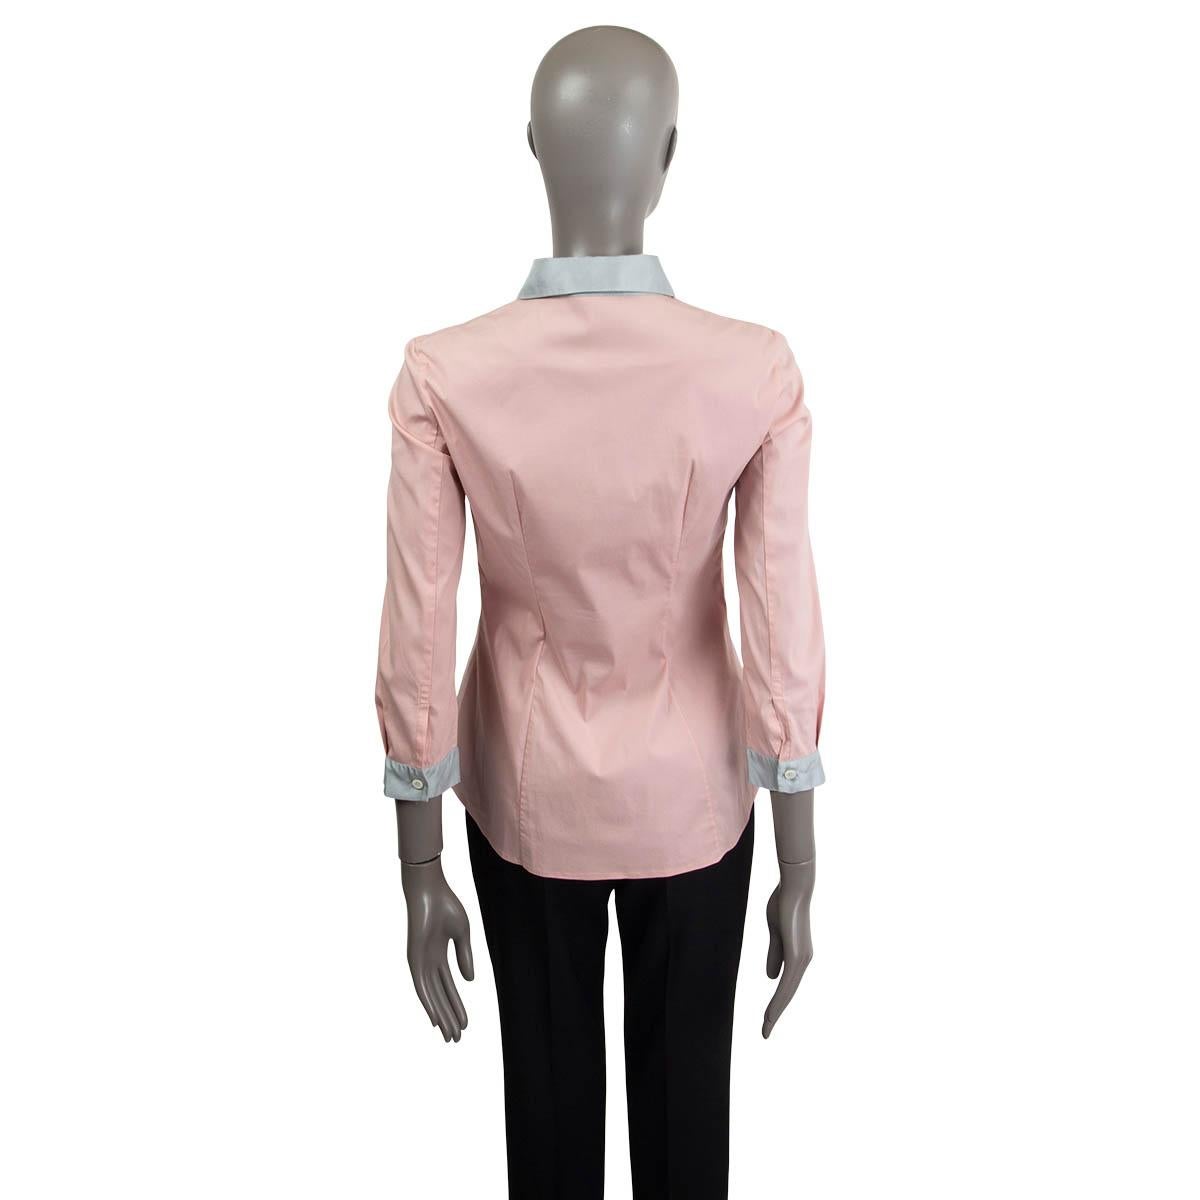 pink prada shirt